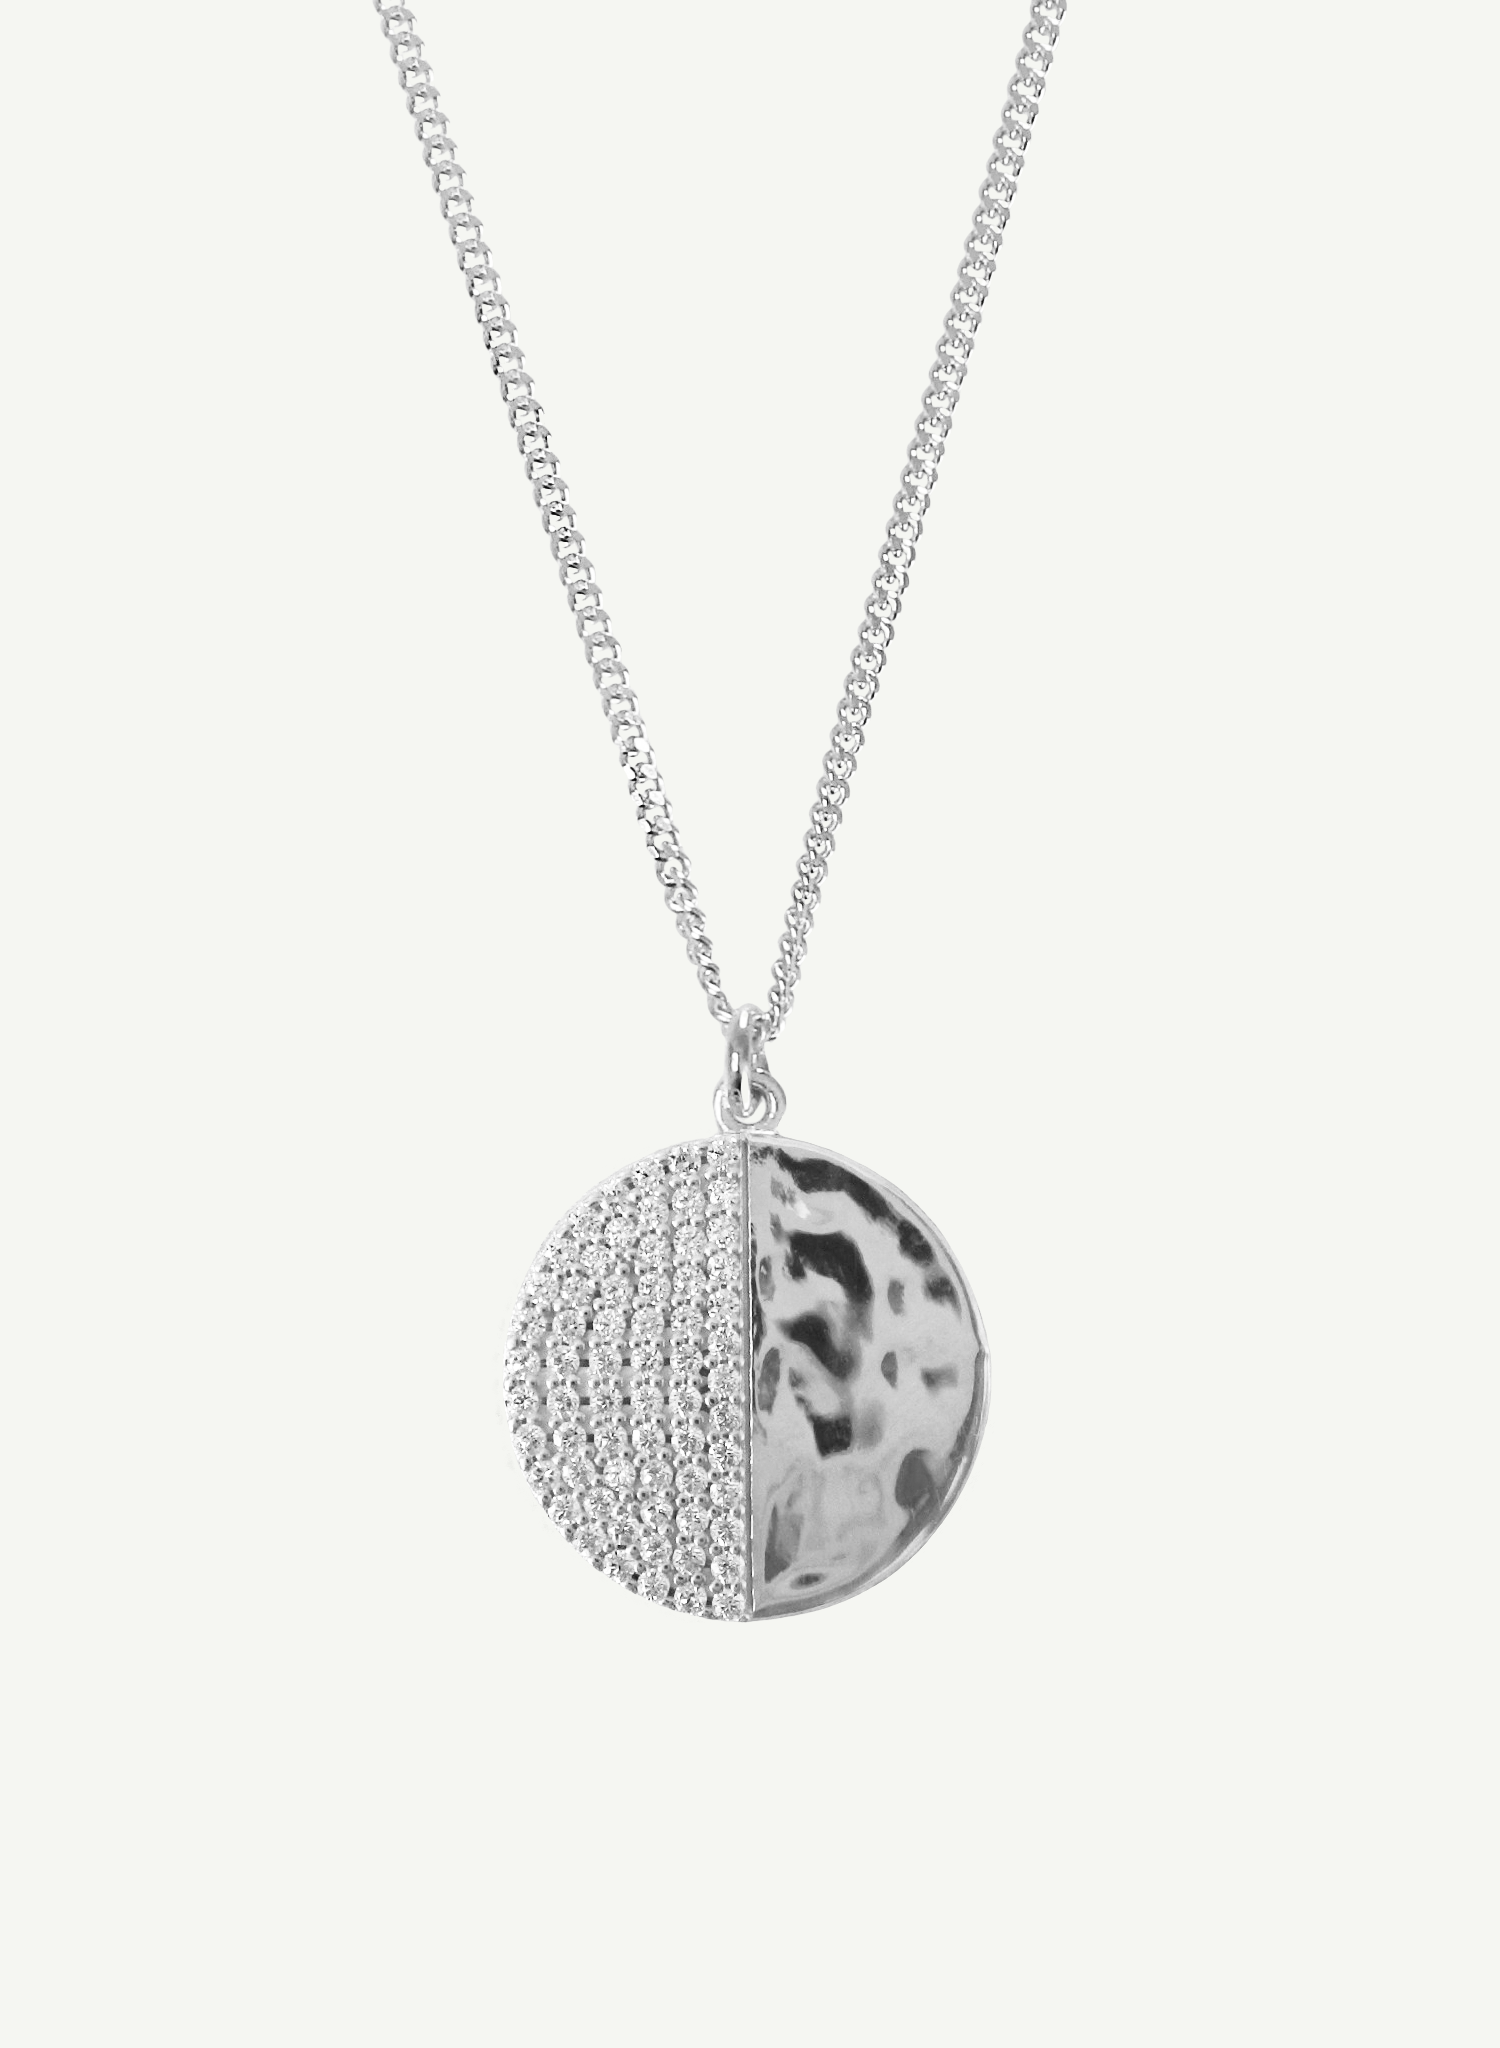 collier-demi-lune-argent-bijou-femme-madeinfrance-fait-en-france-Bento-jewelry